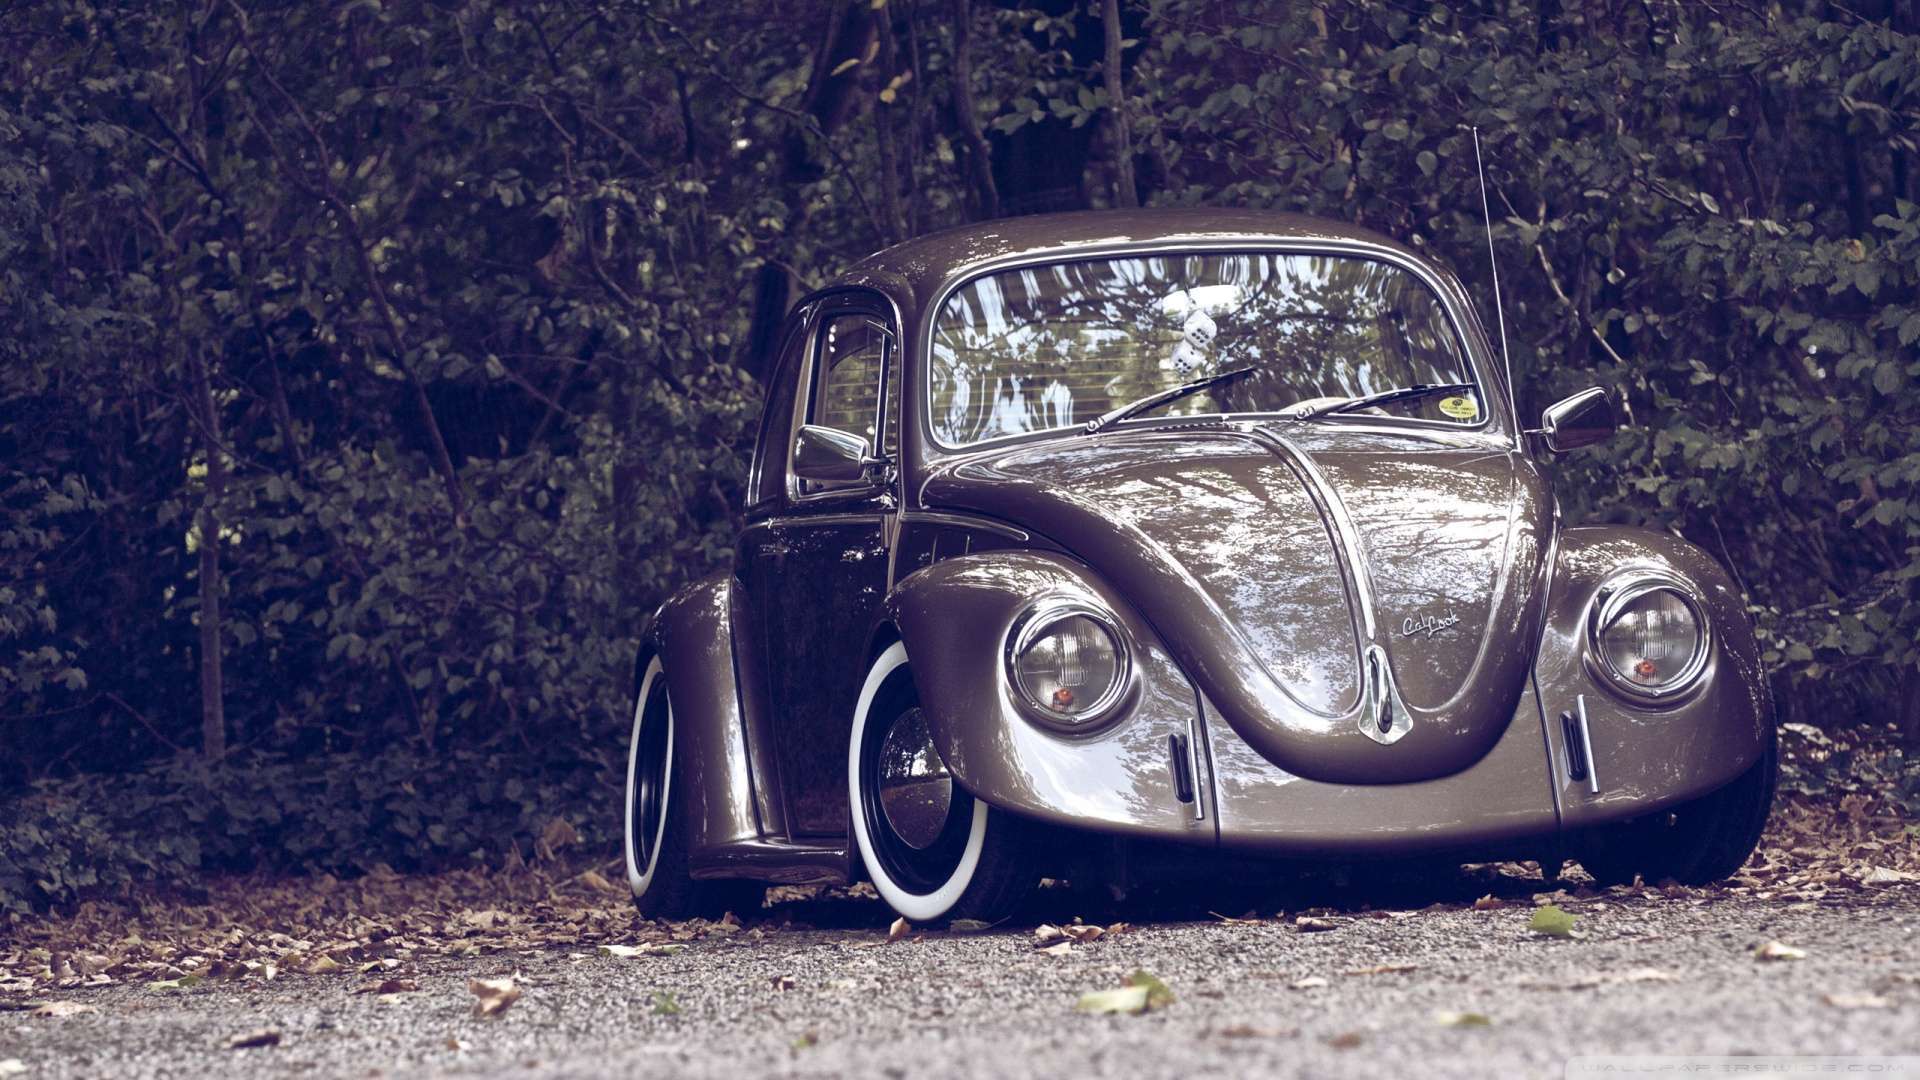 Wallpaper Volkswagen Beetle Retro 1080p HD Upload At